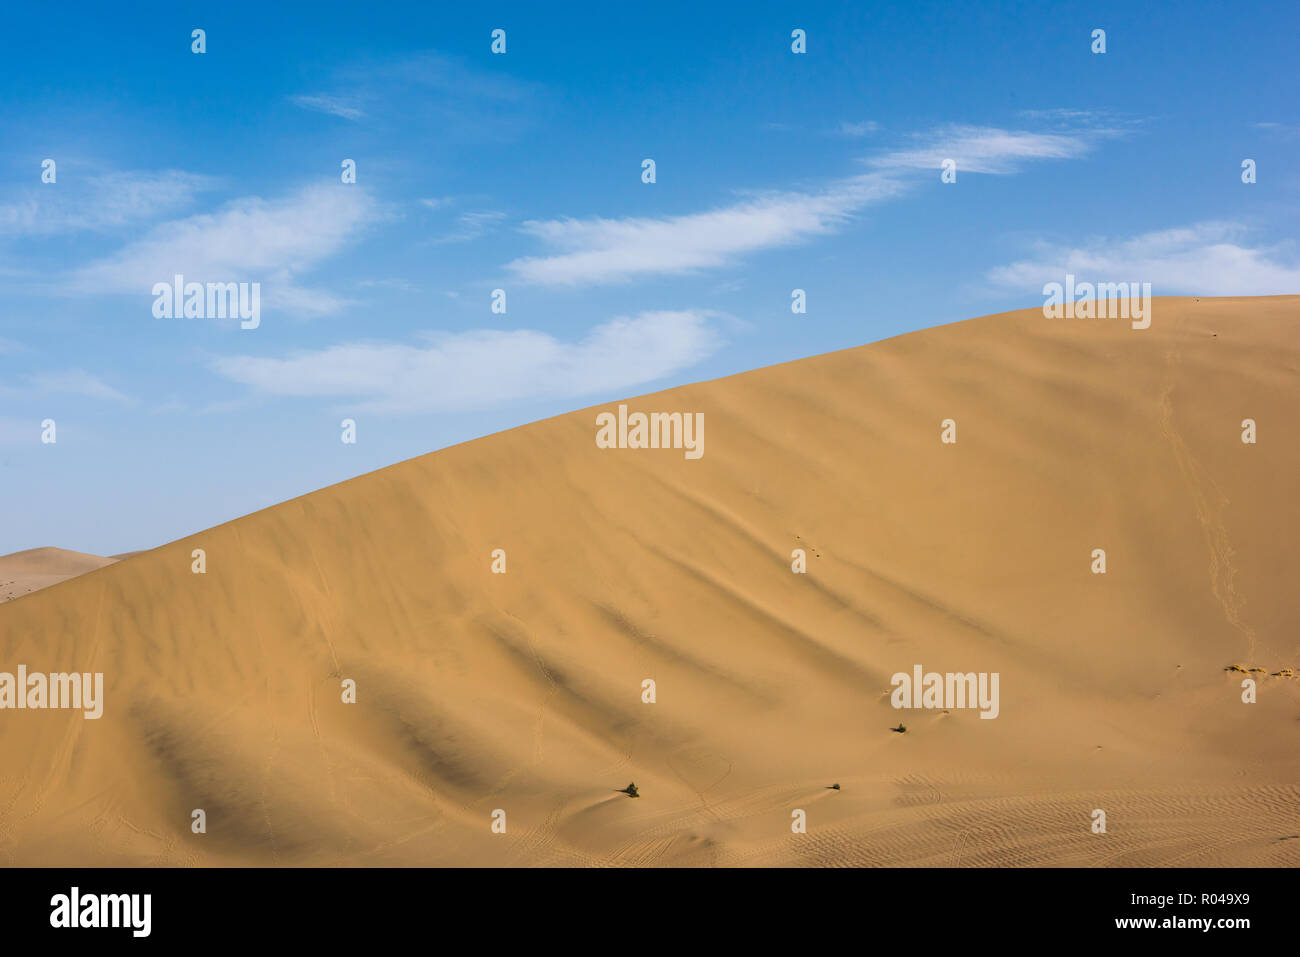 Las dunas de arena del desierto con el cielo azul de fondo. Curvas de hermosos desiertos Foto de stock